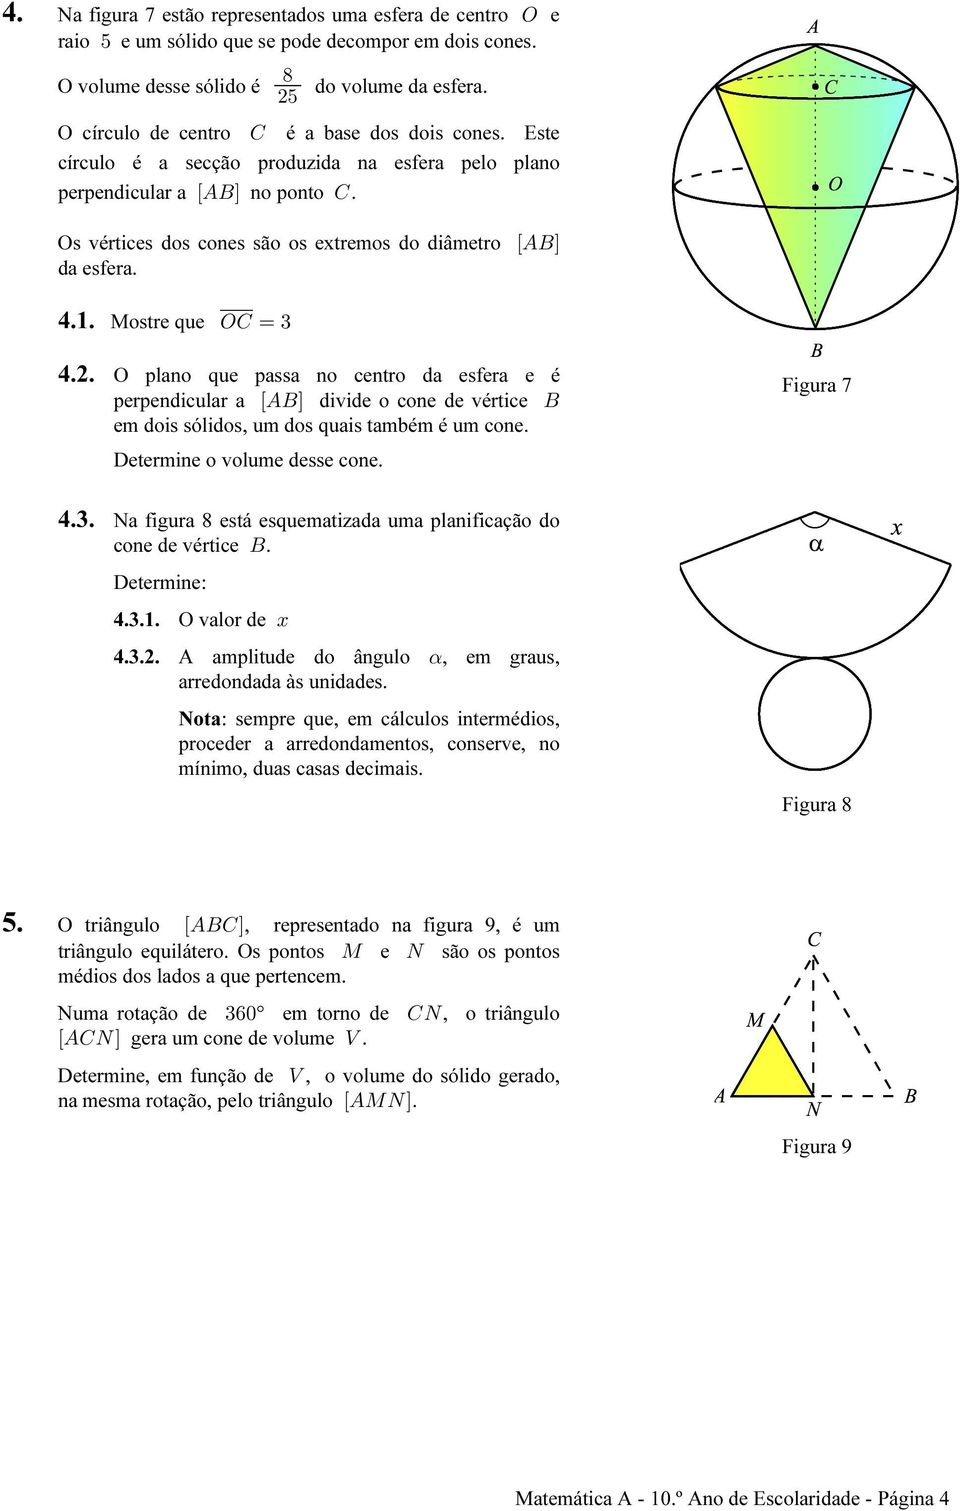 4.1. Mostre que SG œ $ 4.2. O plano que passa no centro da esfera e é perpendicular a ÒEFÓ divide o cone de vértice F em dois sólidos, um dos quais também é um cone. Determine o volume desse cone.